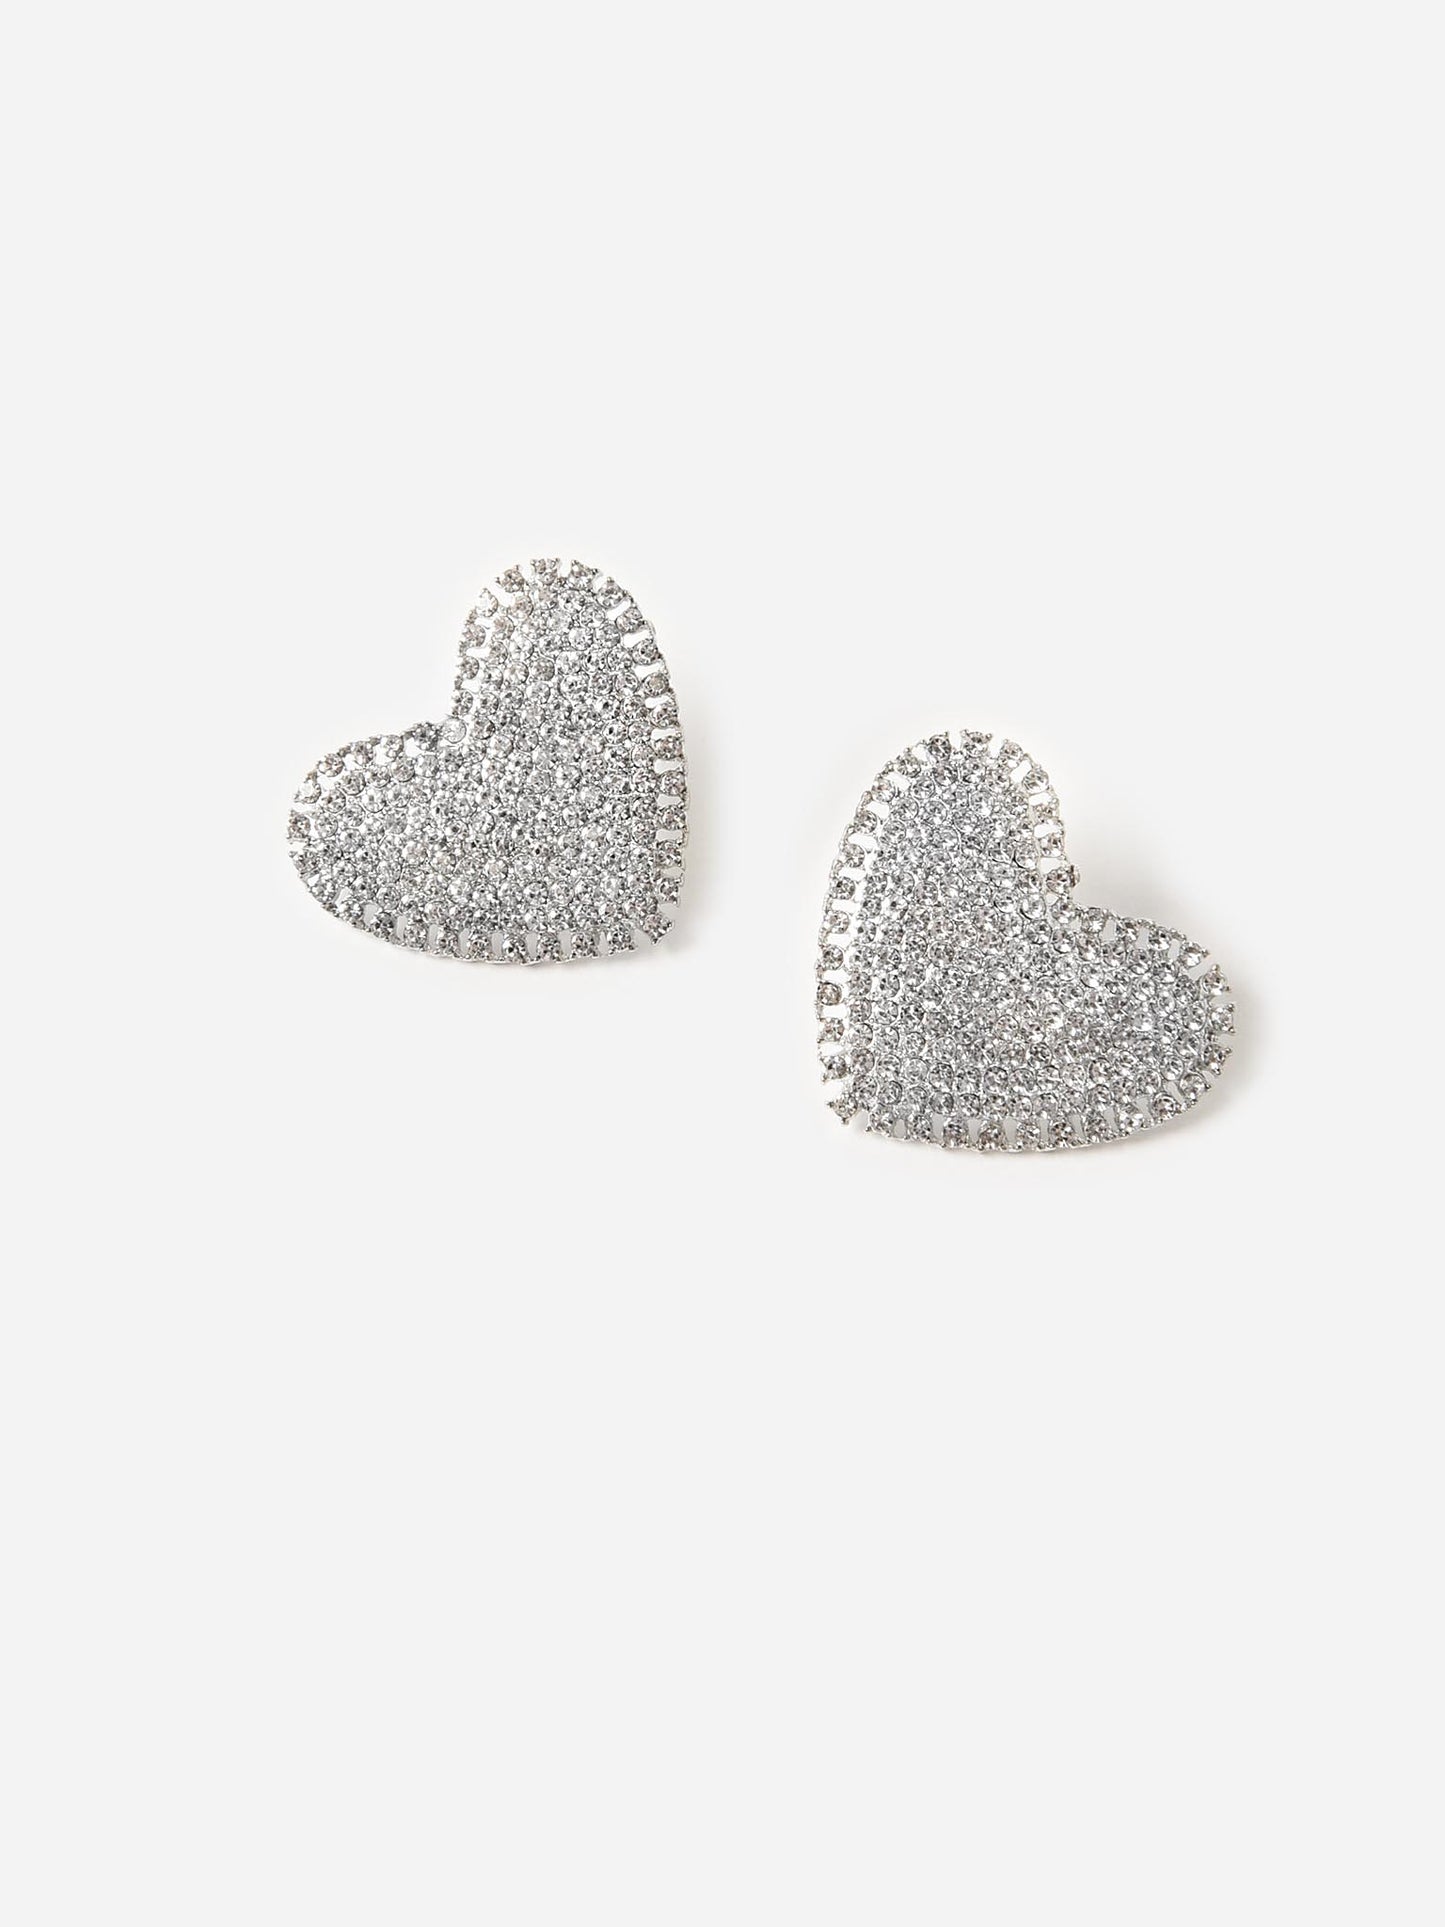 Neely Phelan Women's Rhinestone Heart Stud Earrings